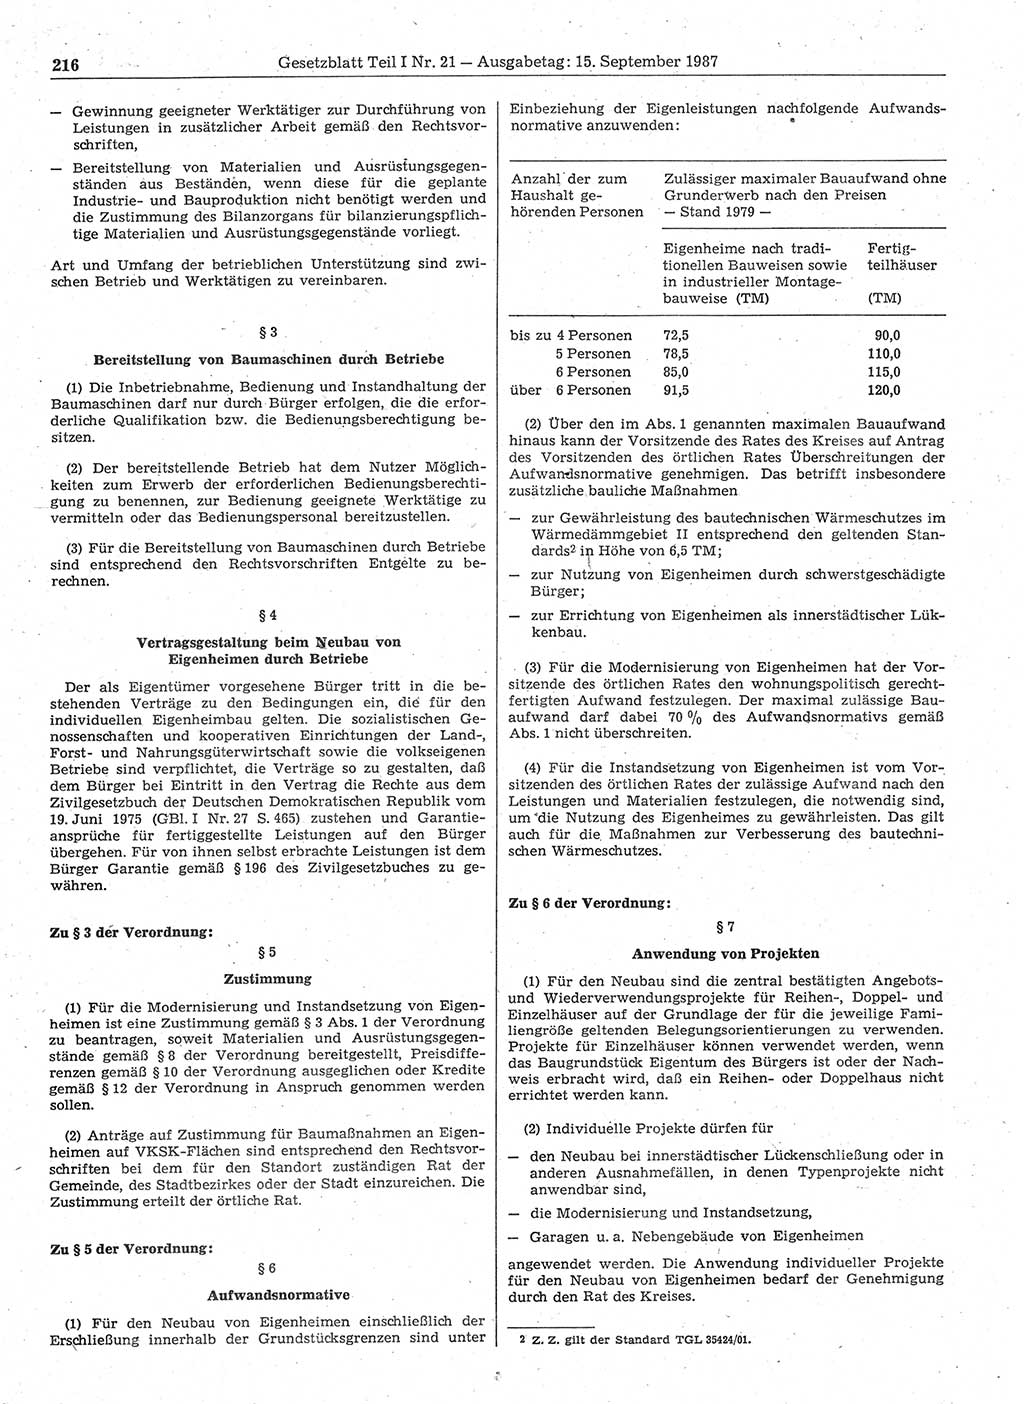 Gesetzblatt (GBl.) der Deutschen Demokratischen Republik (DDR) Teil Ⅰ 1987, Seite 216 (GBl. DDR Ⅰ 1987, S. 216)